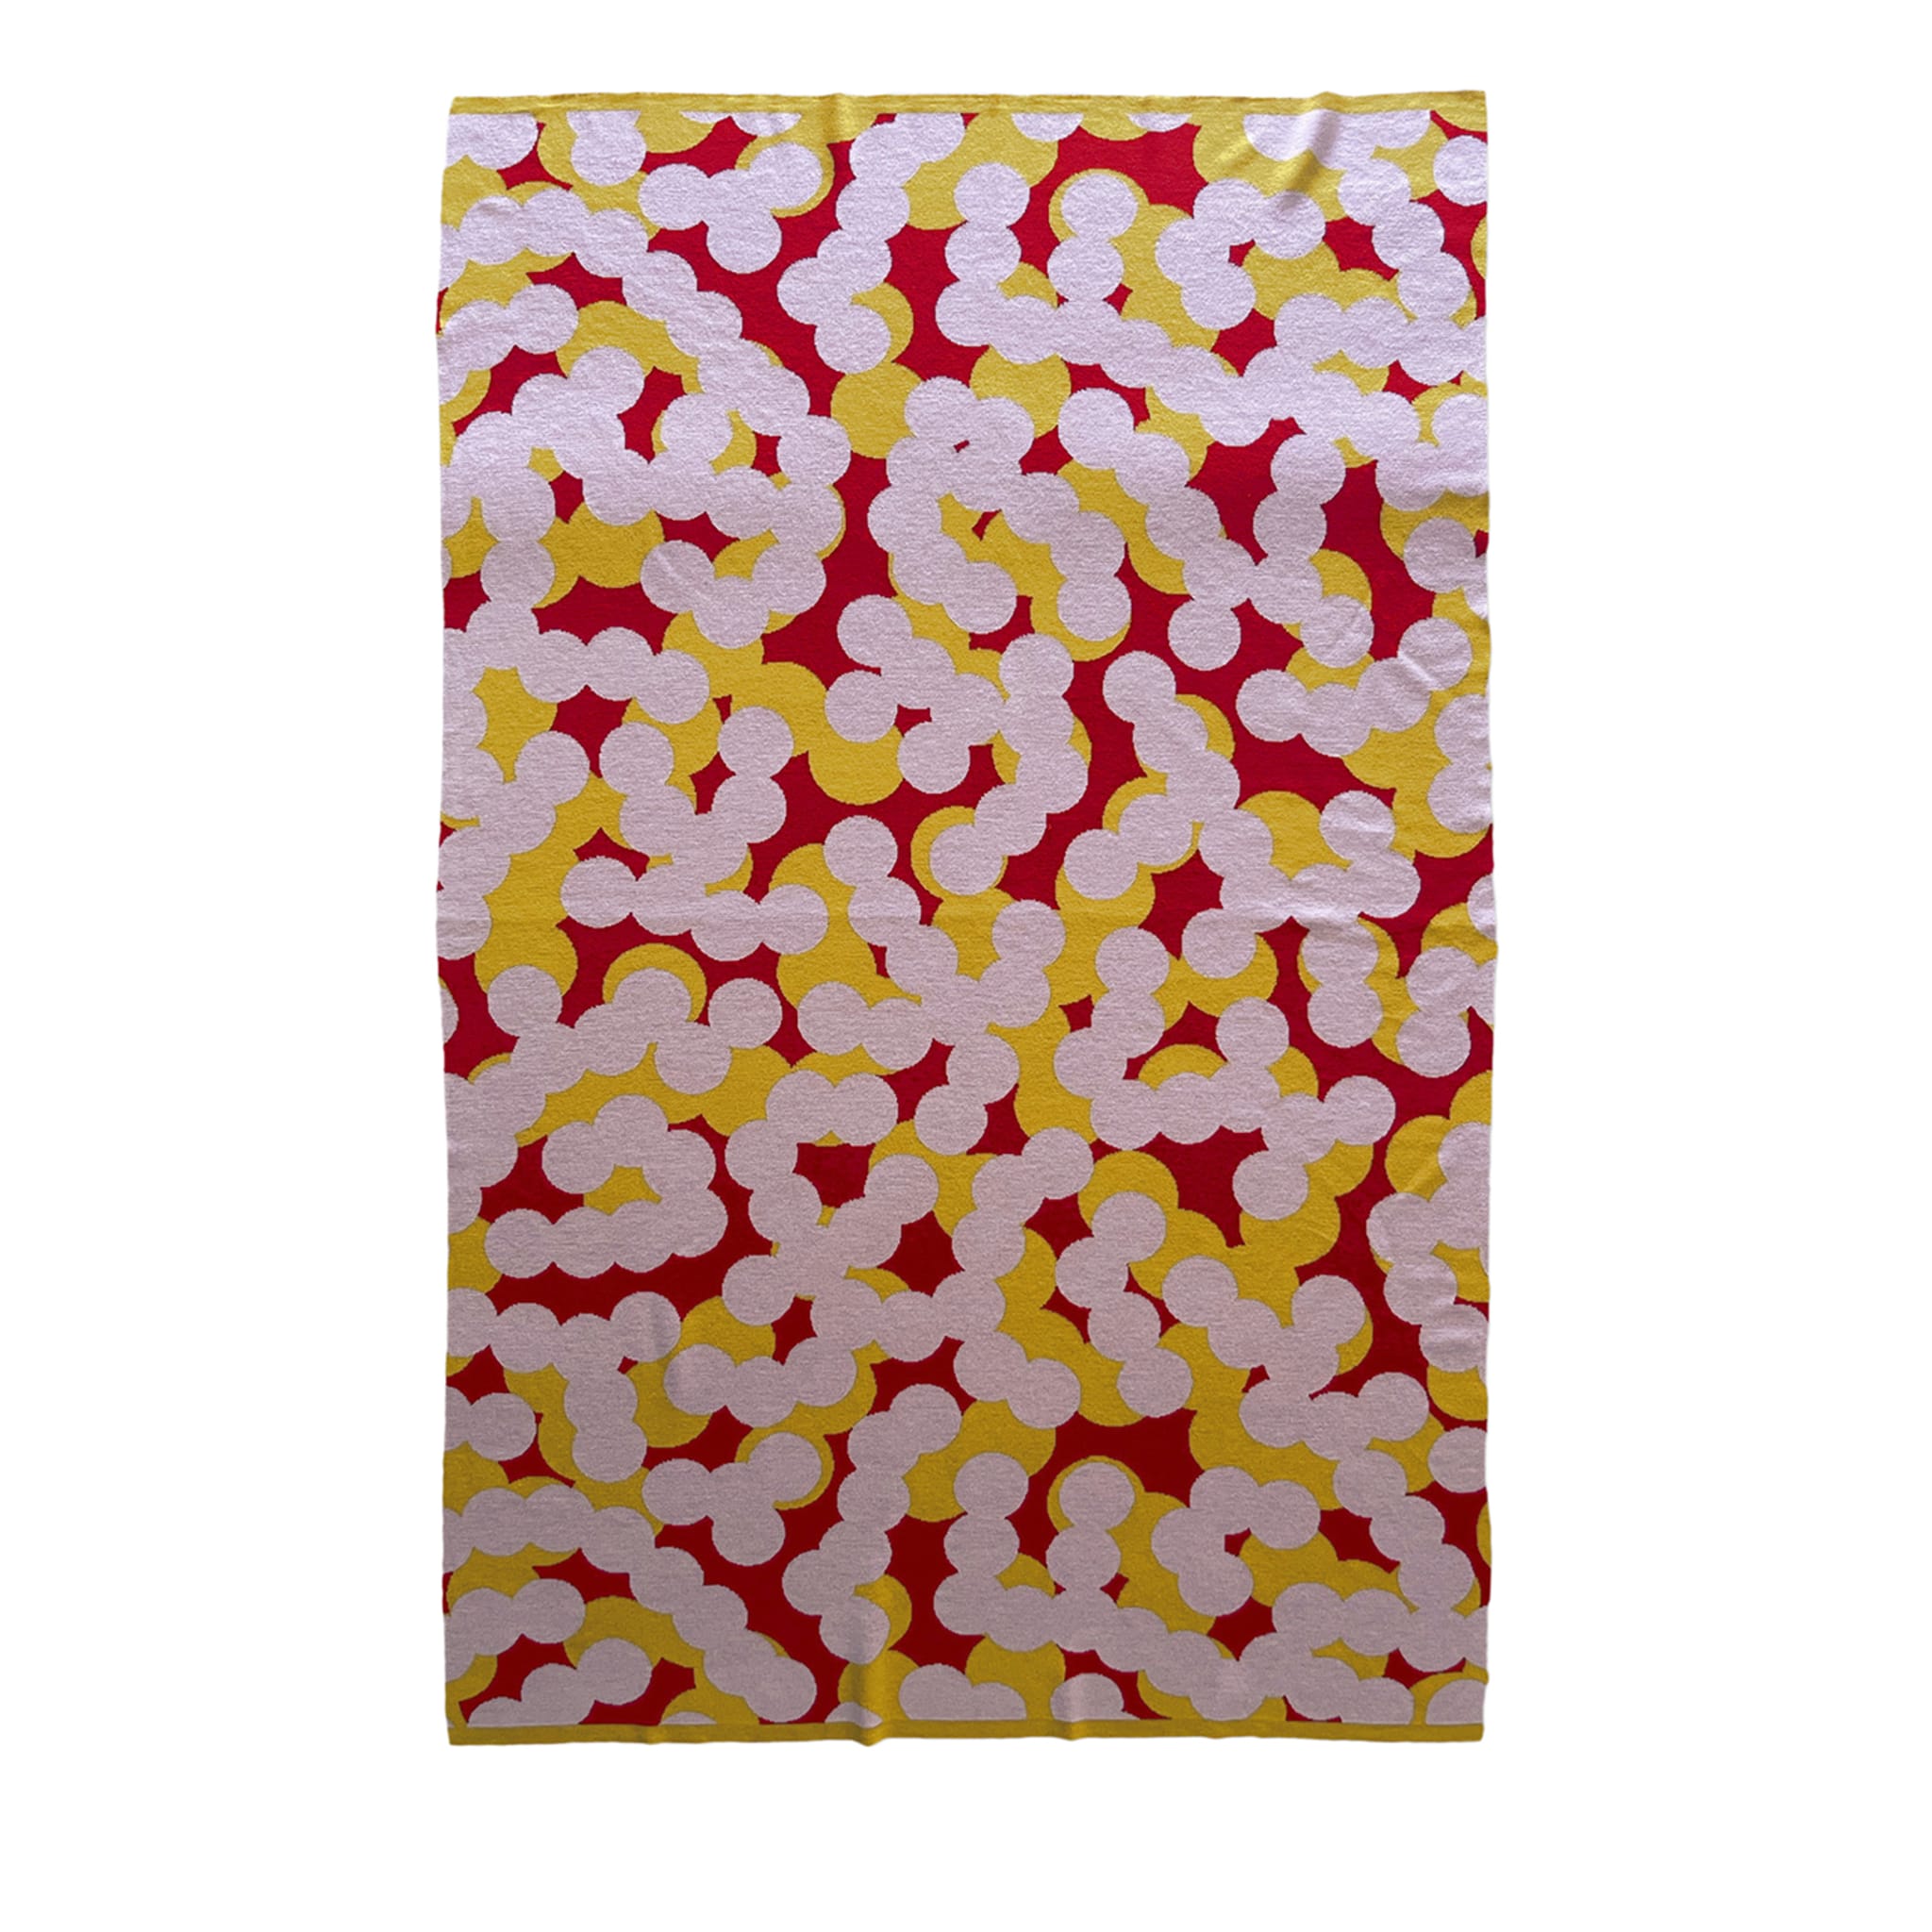 Trip 2 Mehrfarbige Decke/Wandteppich von Serena Confalonieri - Hauptansicht